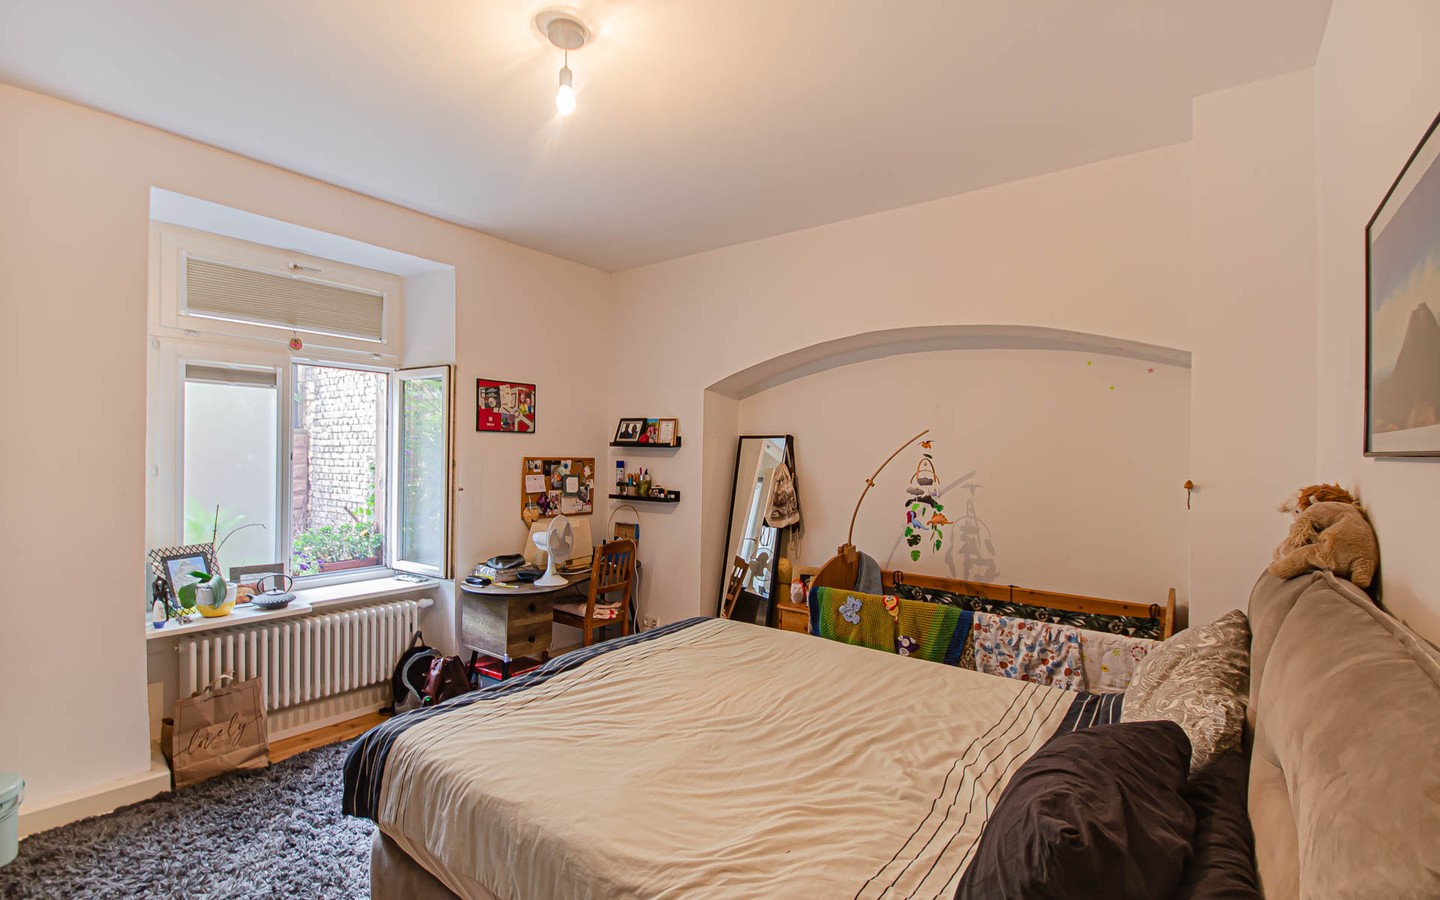 Schlafzimmer - Mittendrin und dennoch ruhig:
Sanierte Altbauwohnung mit Gartenanteil